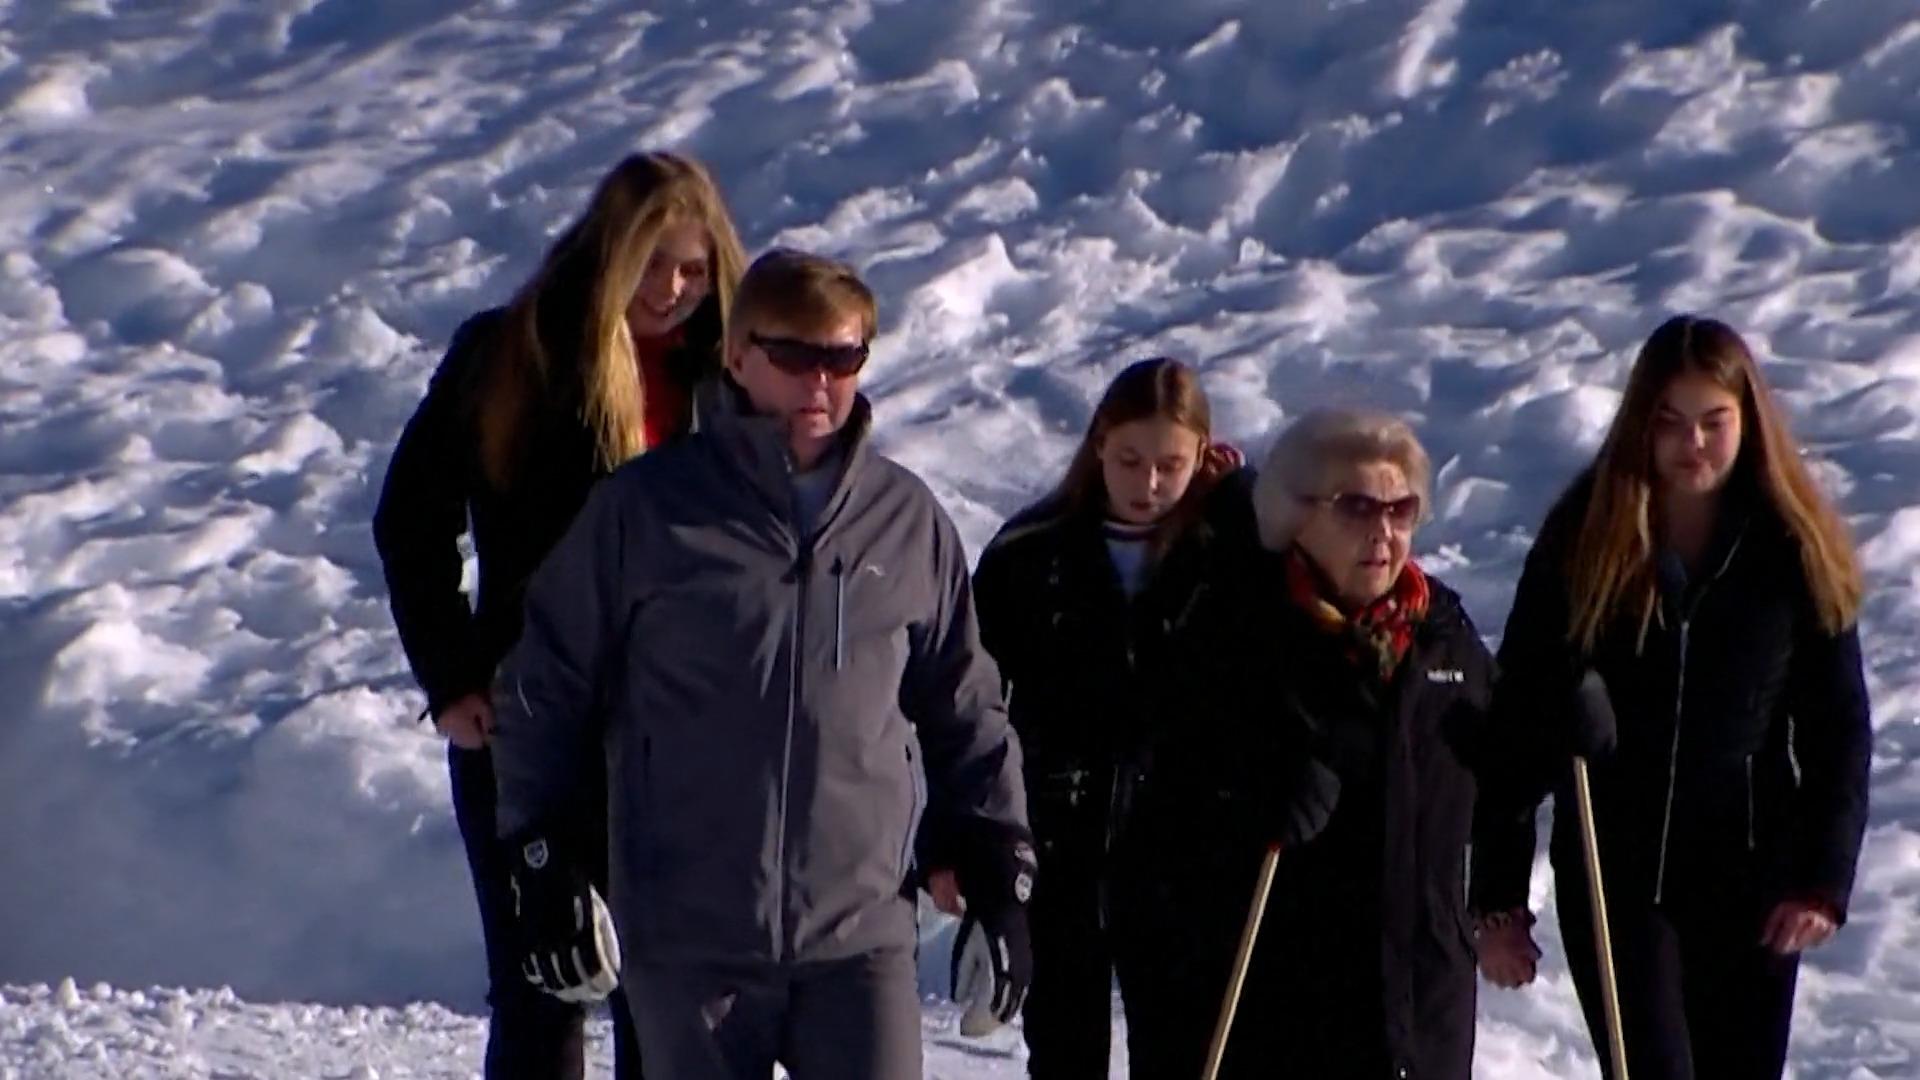 Prinzessin Beatrix der Niederlande brach sich das Handgelenk Skiunfall mit 85 Jahren!